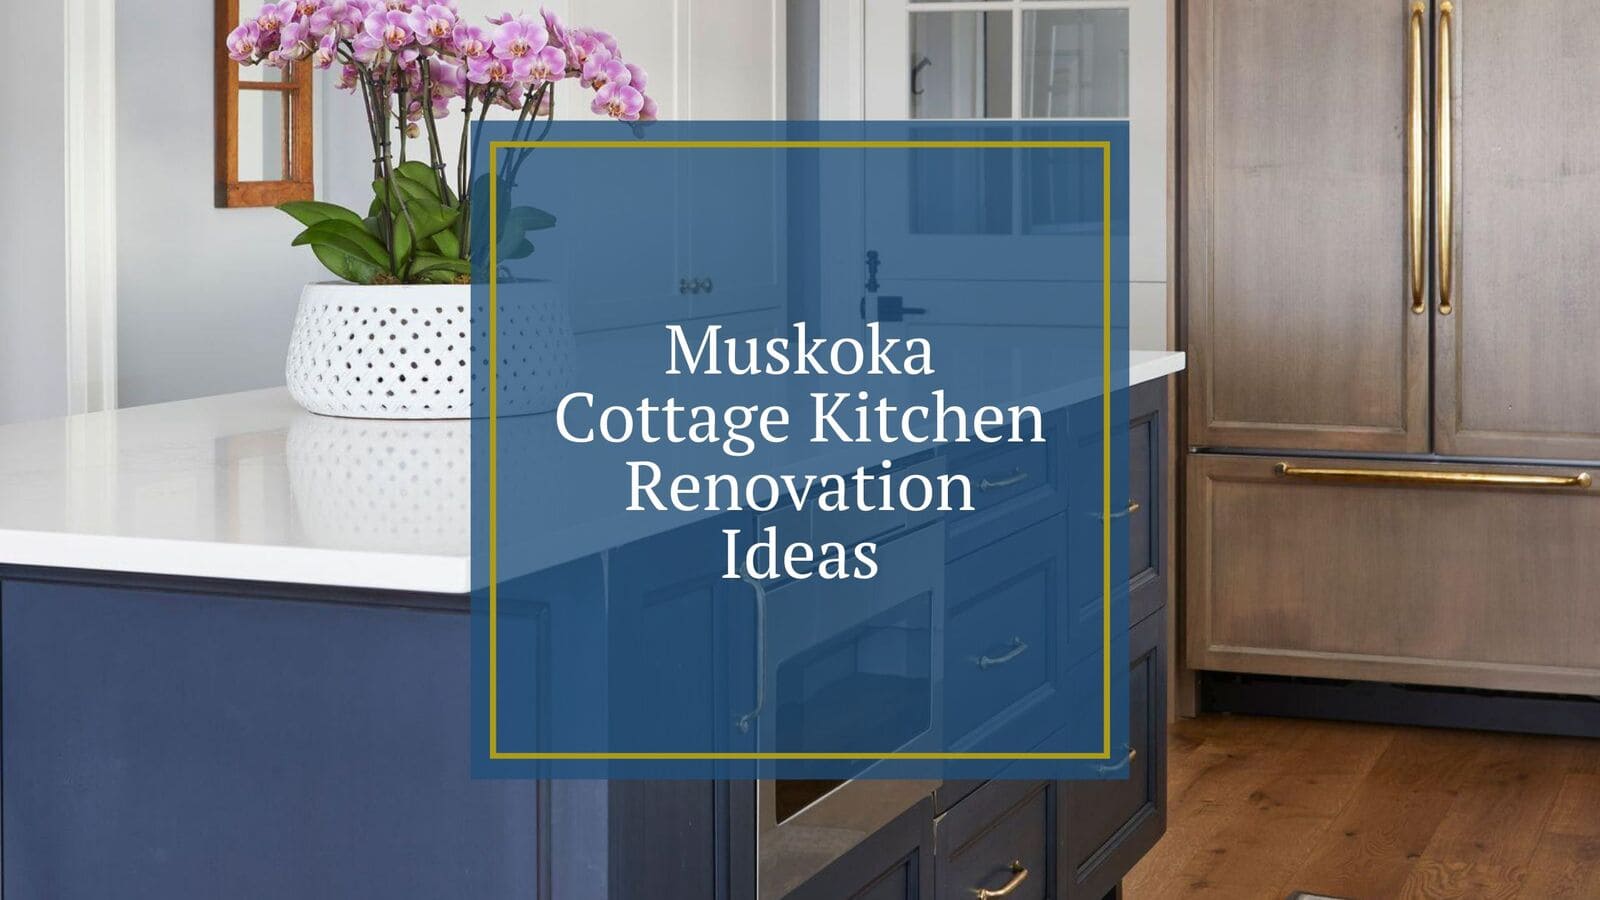 Muskoka Cottage Kitchen Renovation Ideas